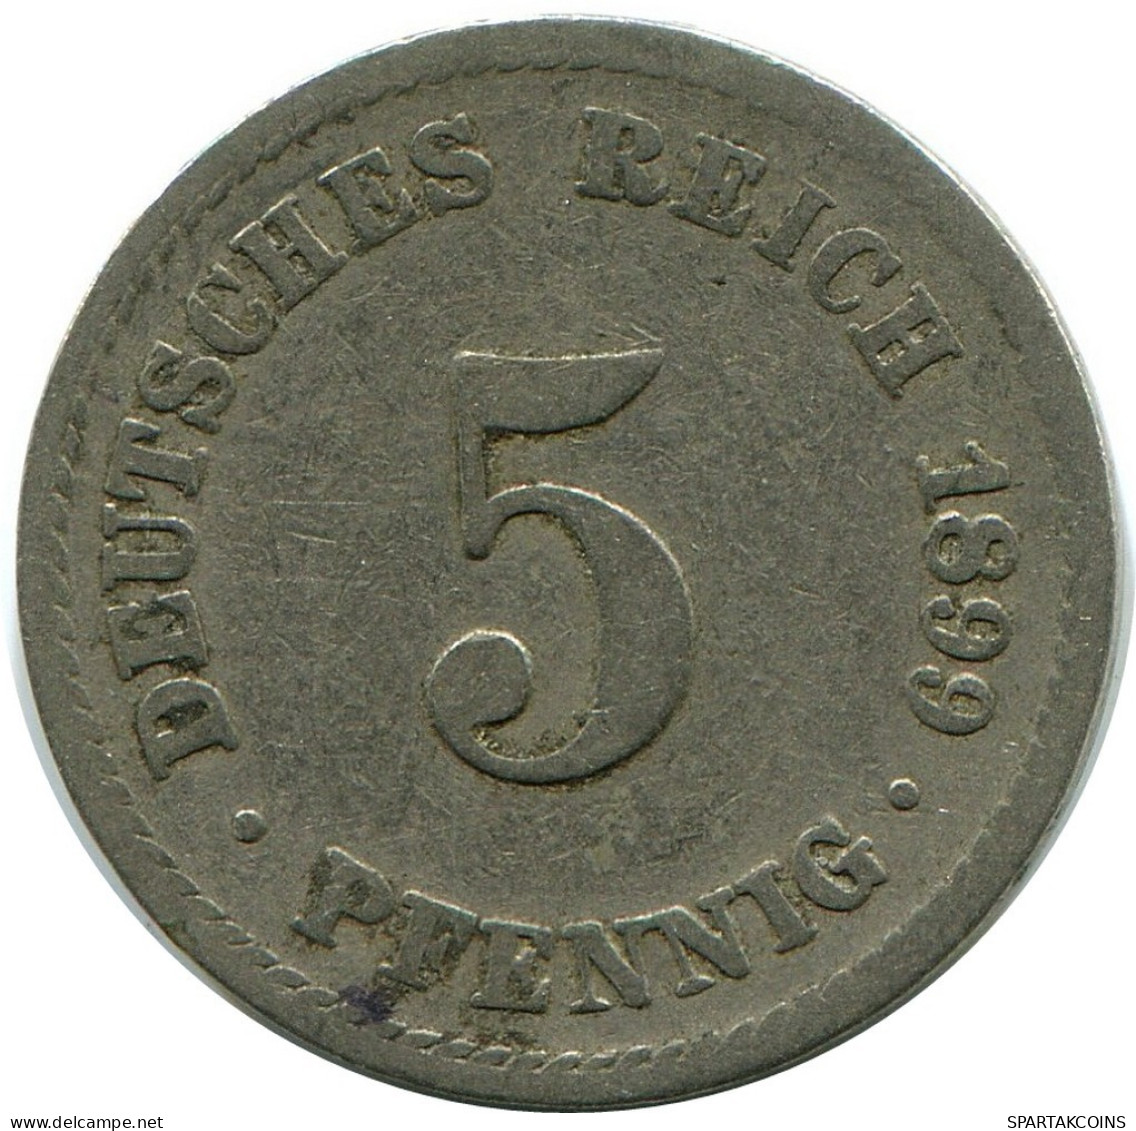 5 PFENNIG 1899 A GERMANY Coin #DB147.U.A - 5 Pfennig